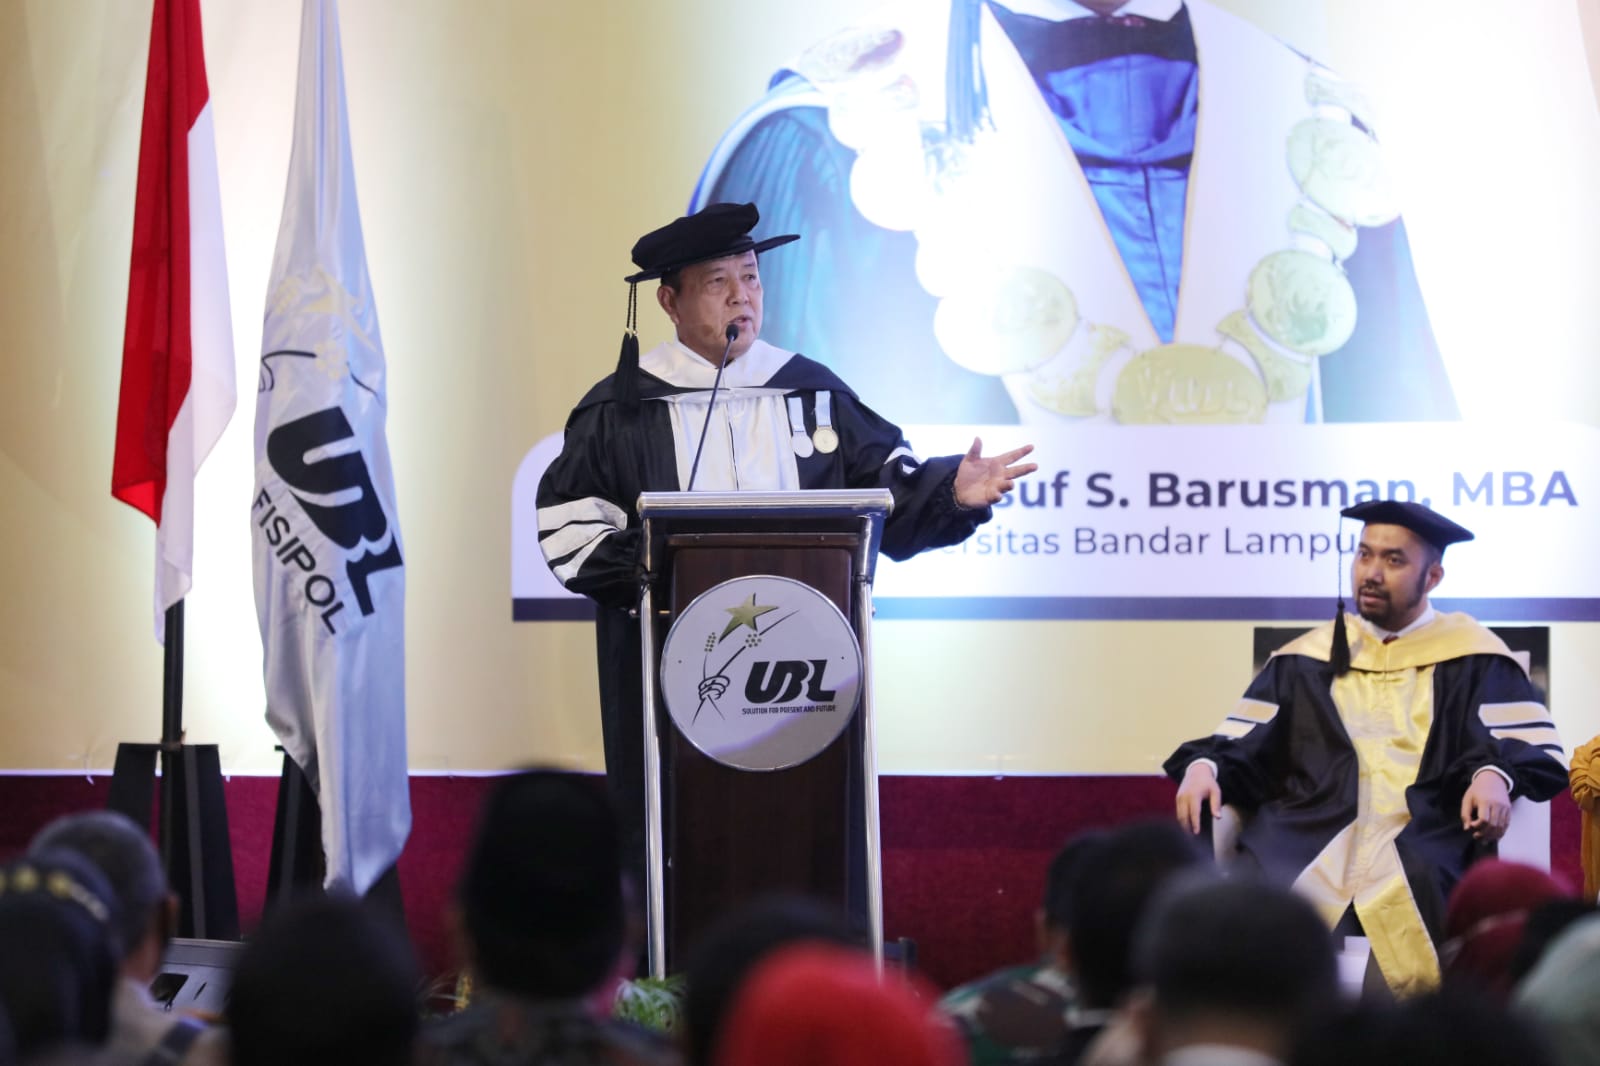 Dies Natalis UBL ke-50, Gubernur Arinal Minta Para Alumni dan Civitas Akademika Bangkitkan Gairah Baru dalam Memotivasi dan Menggerakan Pembangunan Lampung